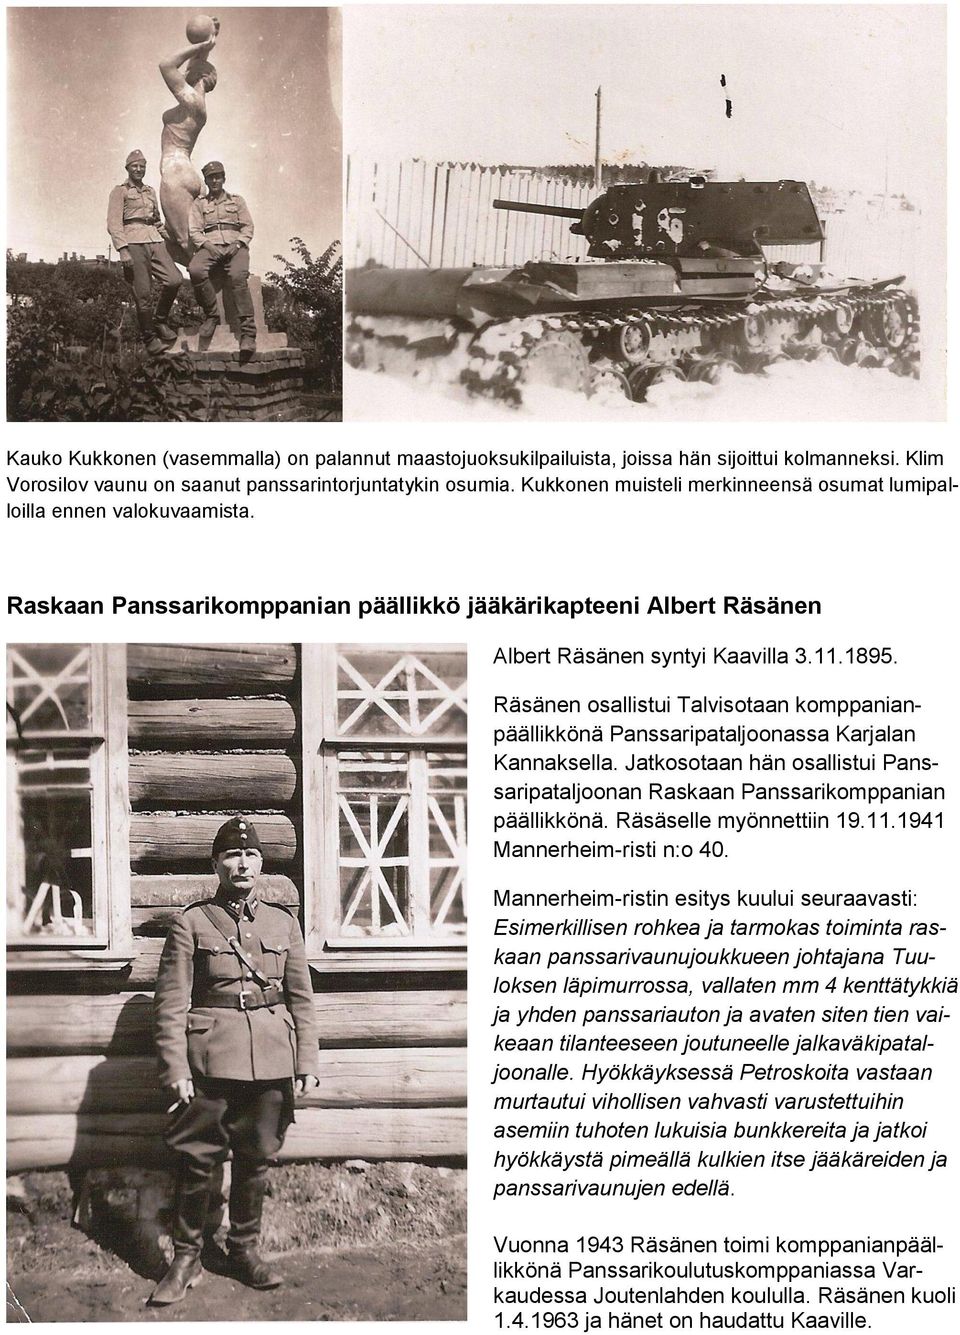 Räsänen osallistui Talvisotaan komppanianpäällikkönä Panssaripataljoonassa Karjalan Kannaksella. Jatkosotaan hän osallistui Panssaripataljoonan Raskaan Panssarikomppanian päällikkönä.